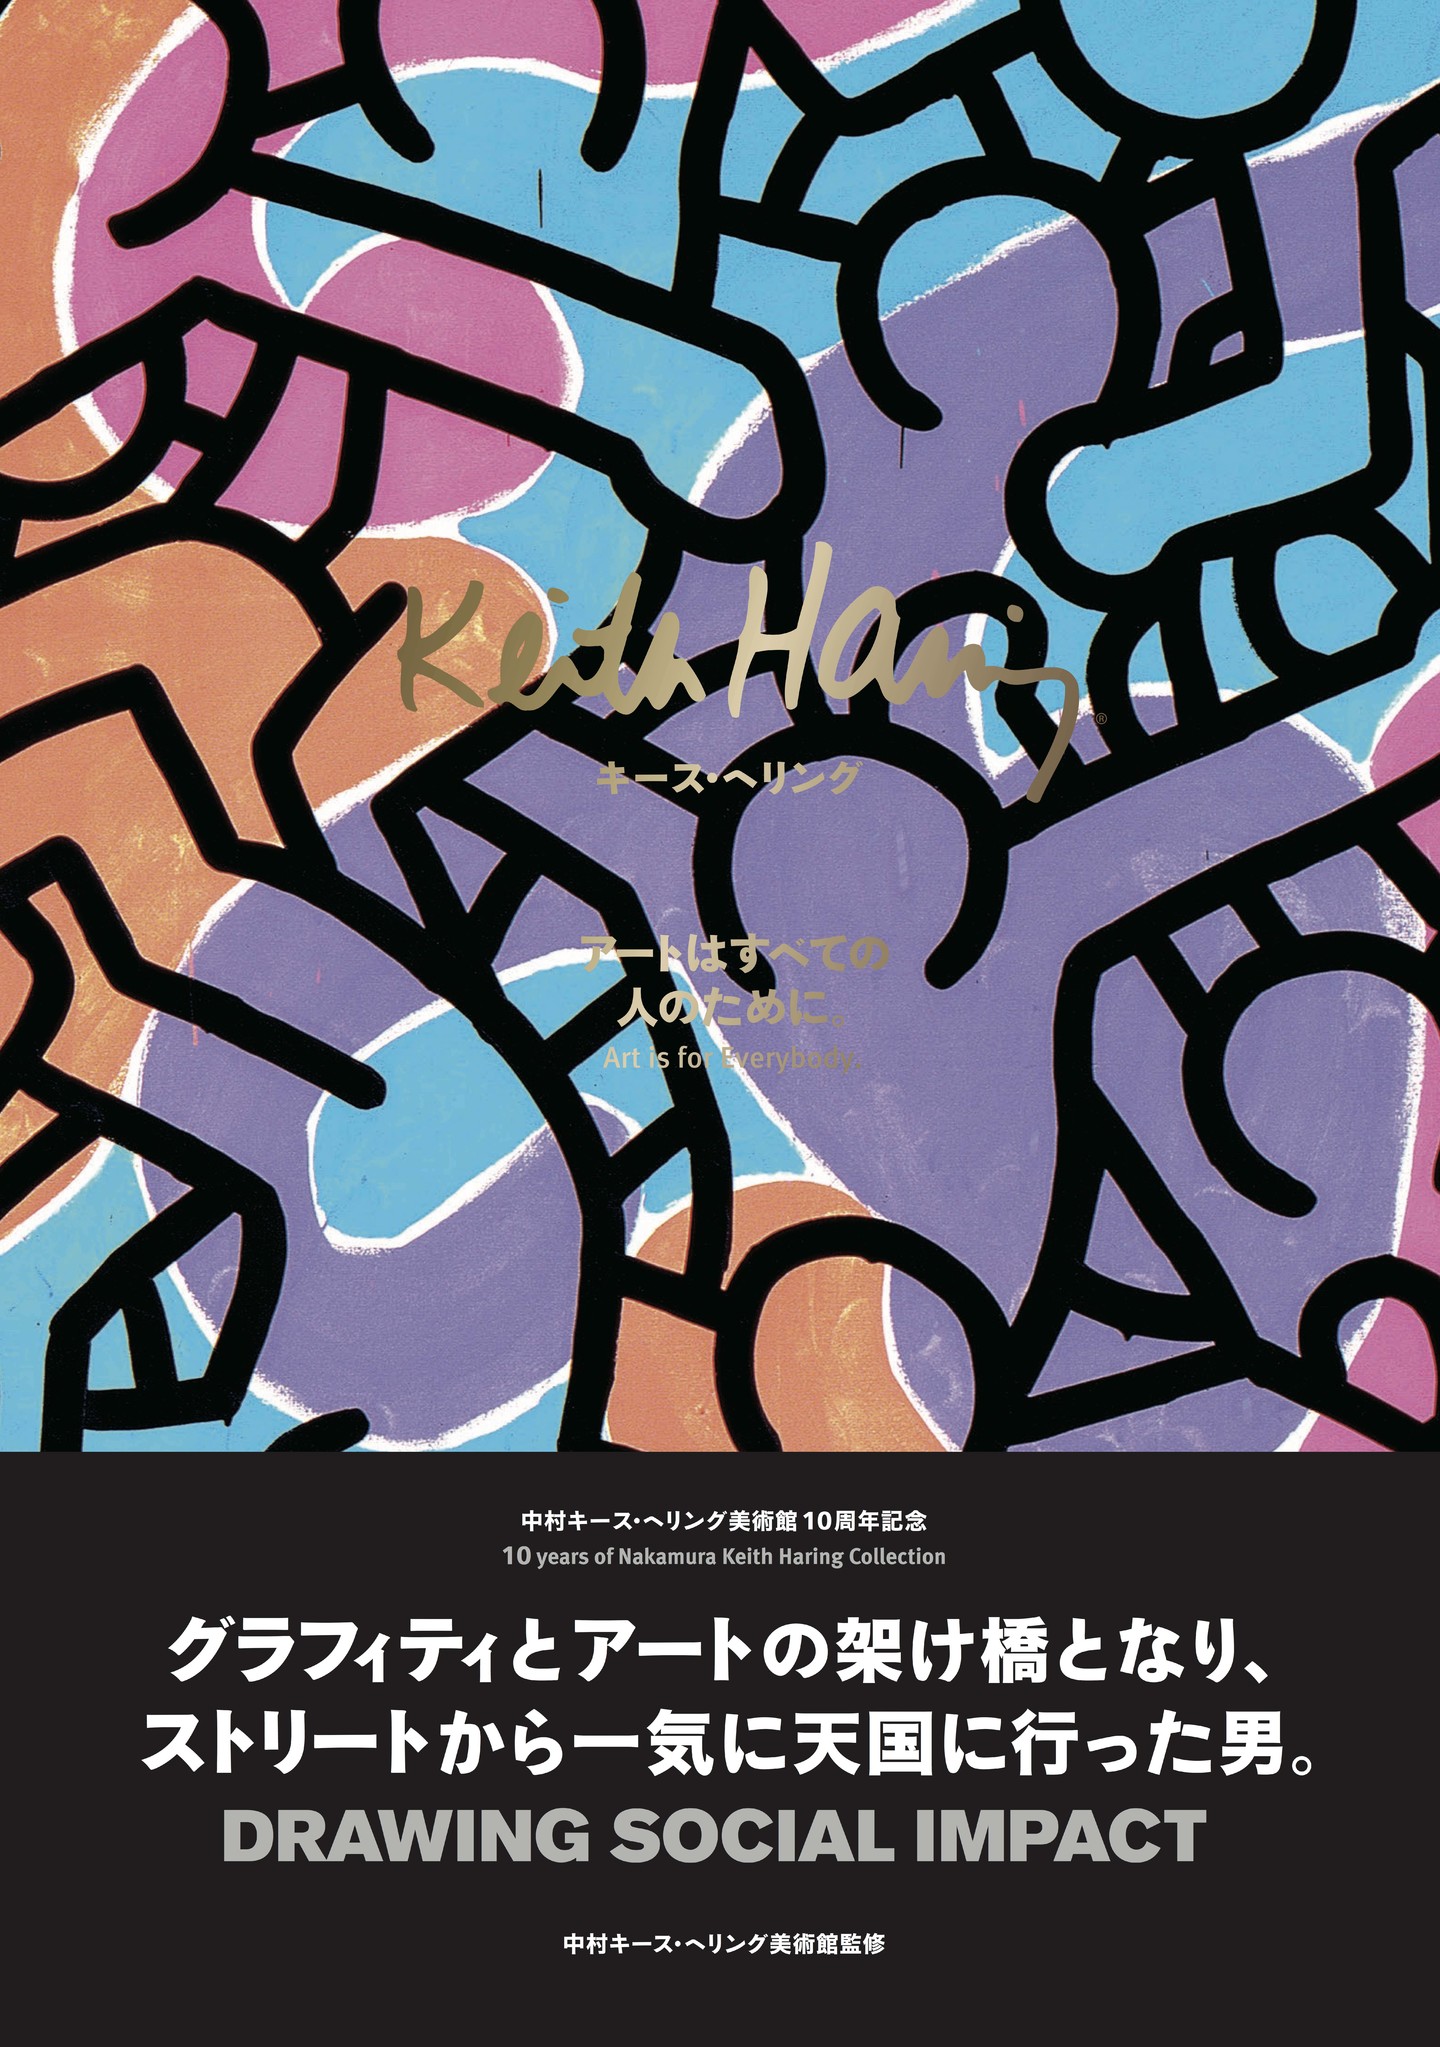 中村キース ヘリング美術館監修 キース ヘリング アートはすべての人のために 8月3日発売 中村キース ヘリング美術館のプレスリリース